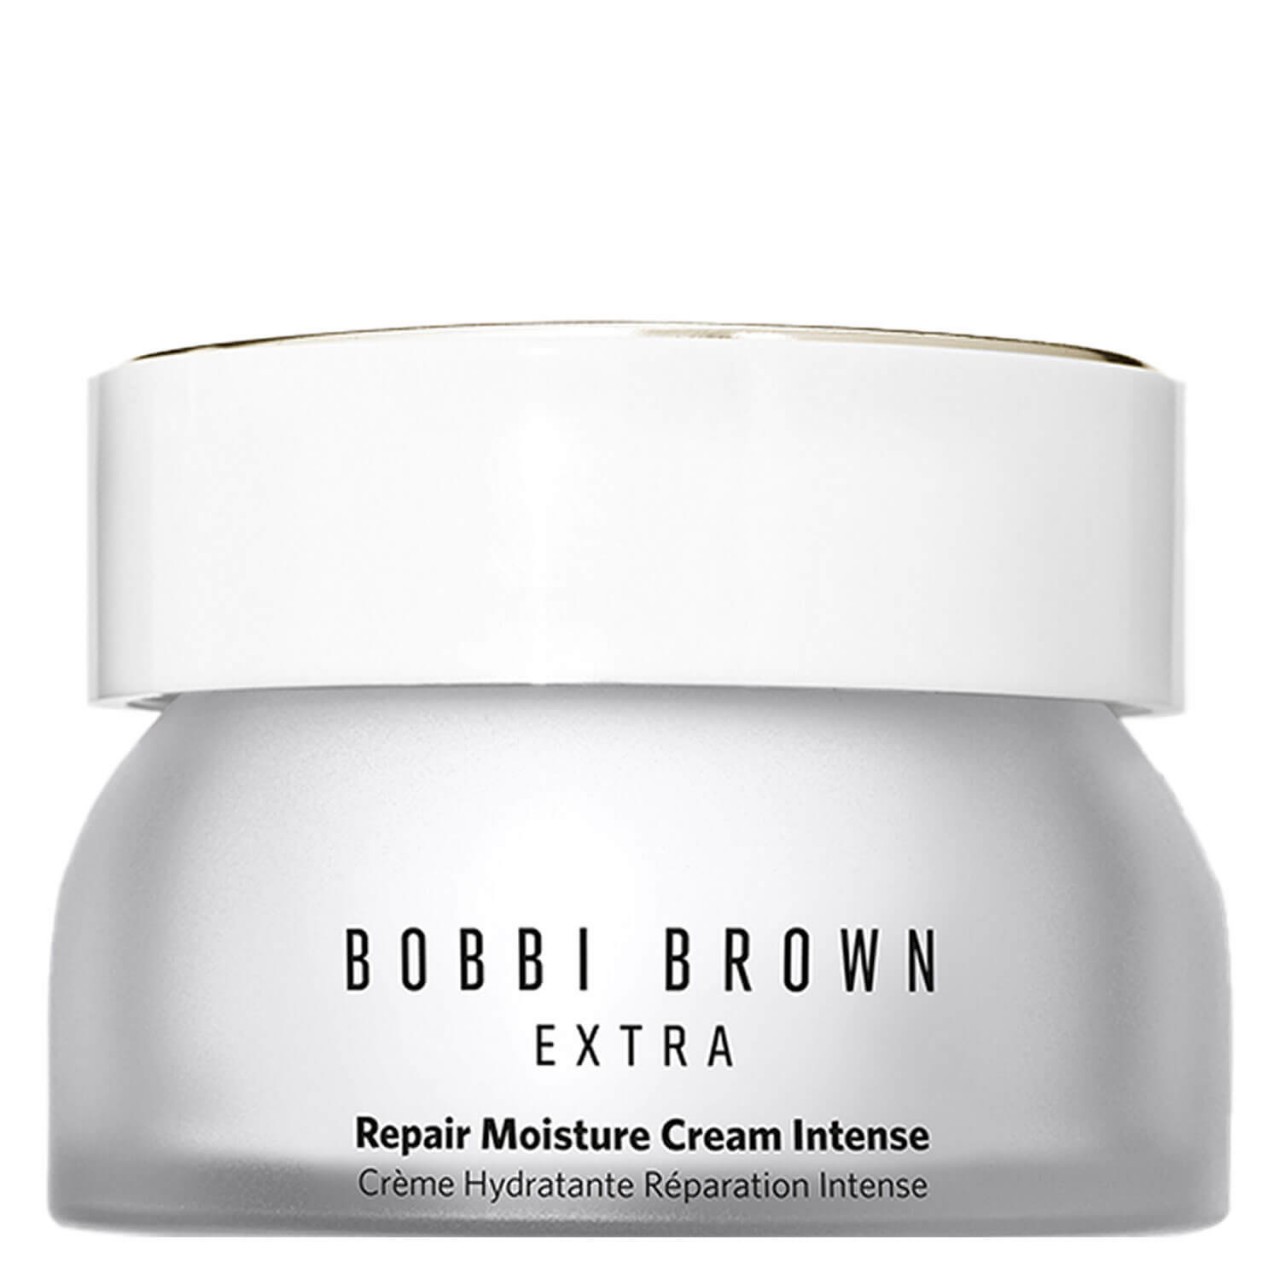 BB Skincare - EXTRA Repair Moisture Cream Intense von Bobbi Brown